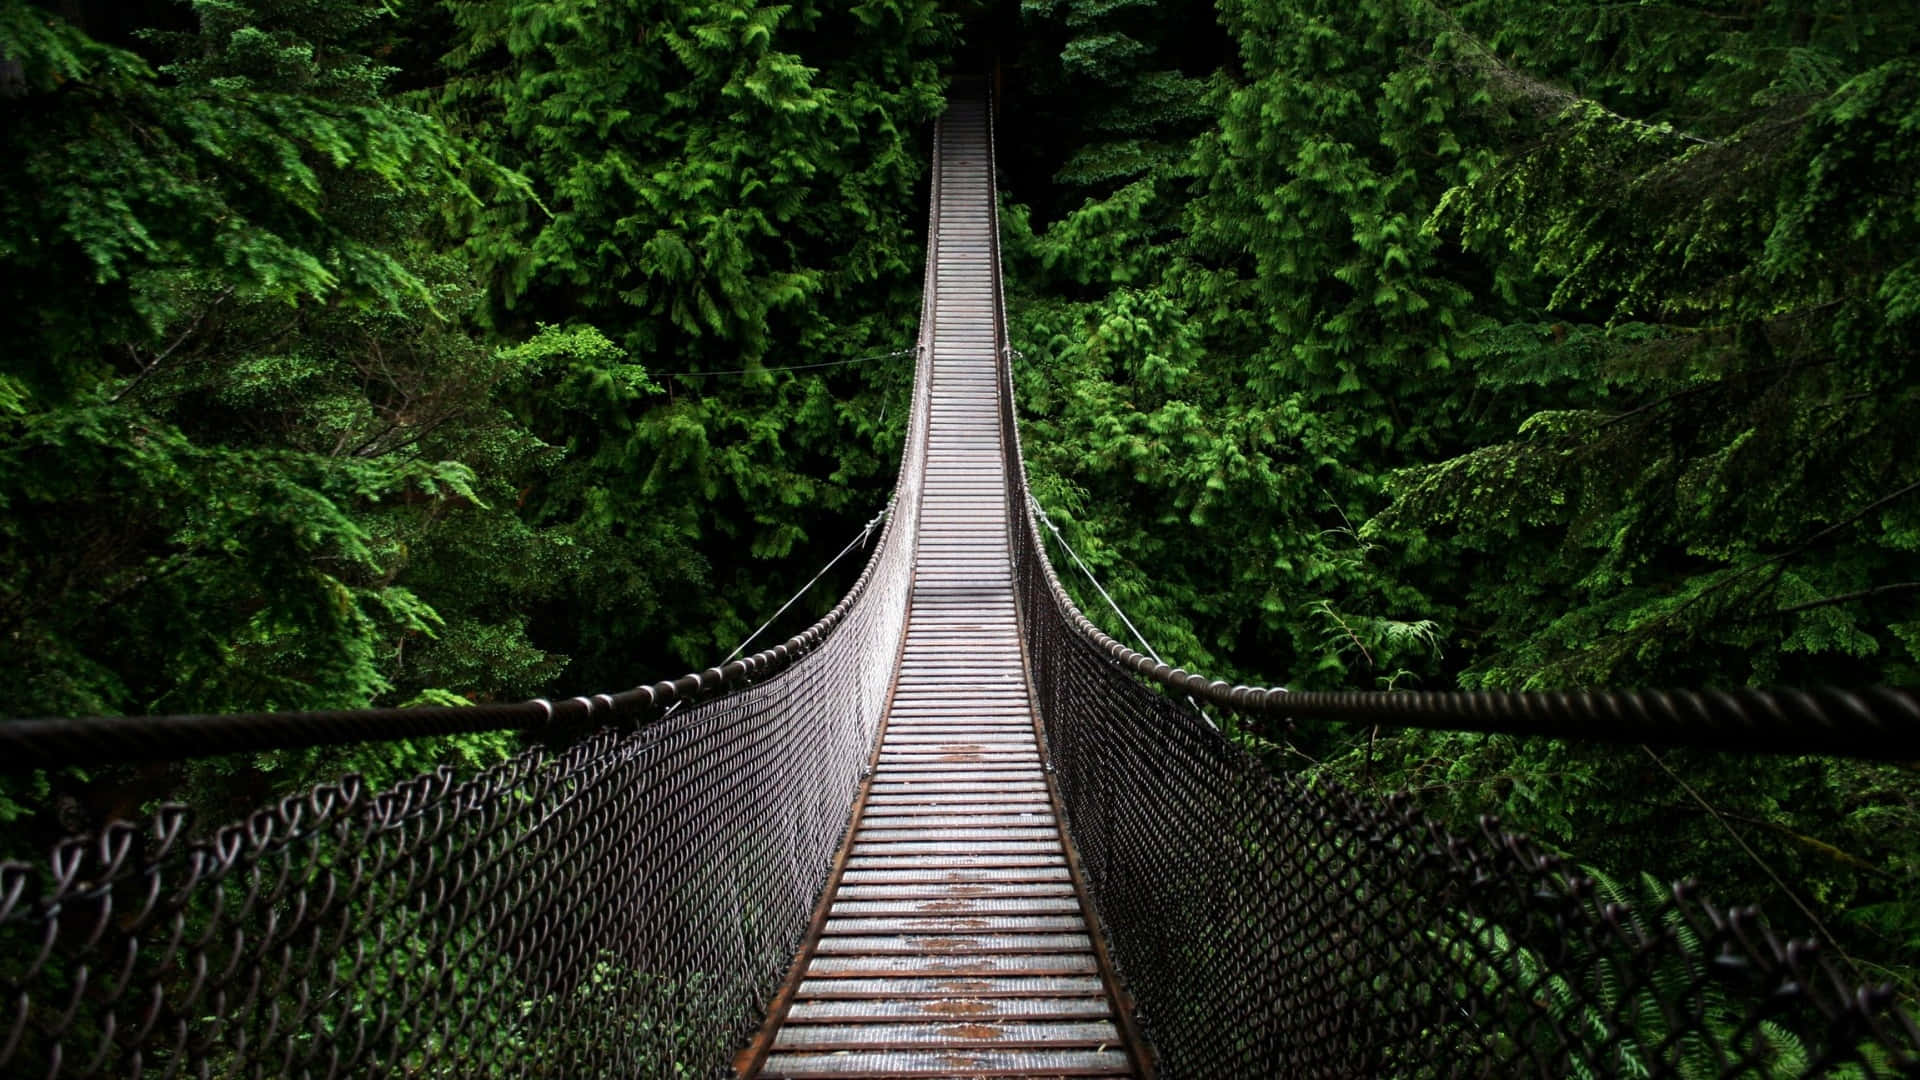 Einehängebrücke, Die Sich Über Einen Wald Erstreckt.